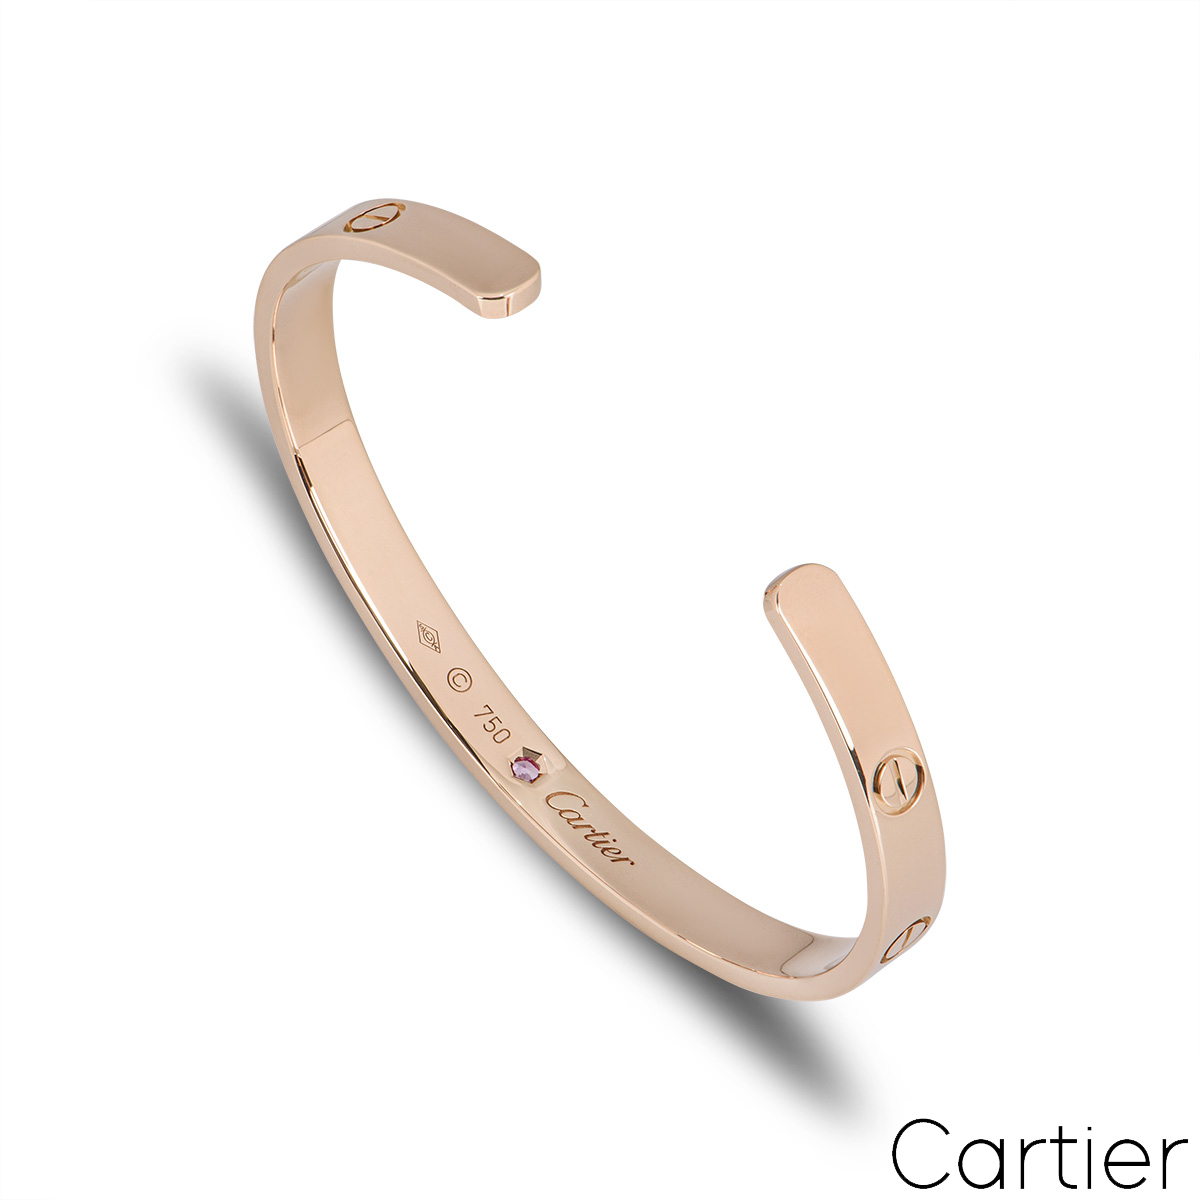 Cartier Rose Gold Pink Sapphire Cuff Love Bracelet Size 17 B6030017